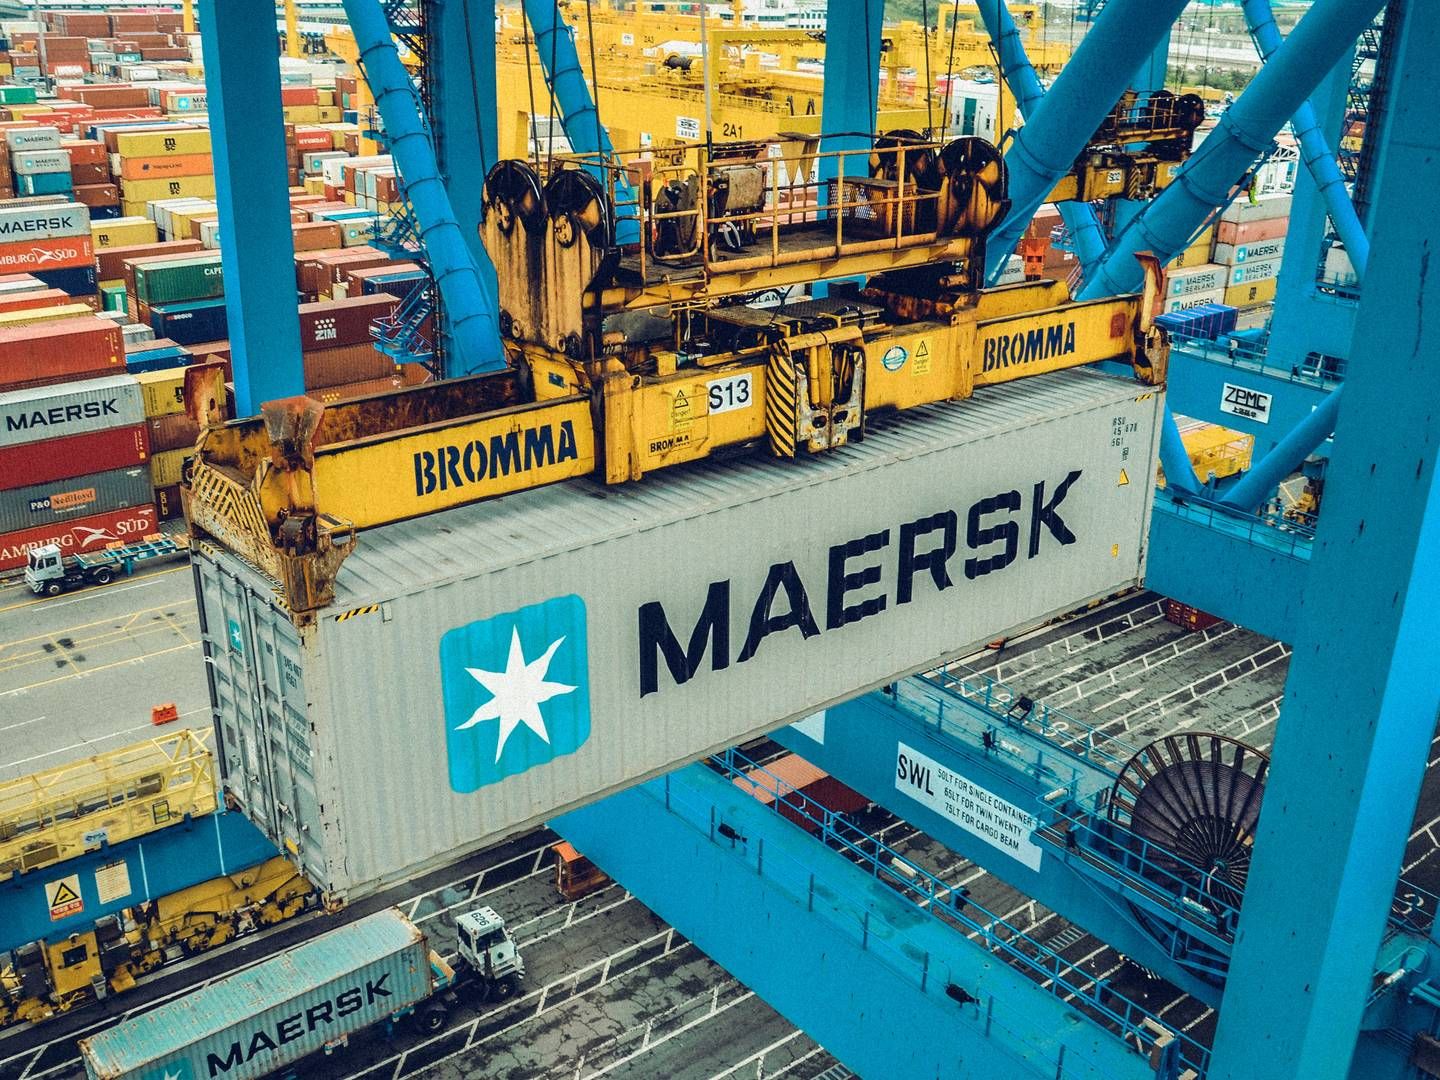 Et amerikansk havneselskab krævede millioner af dollars i erstatning fra Mærsk, som trak sig ud af en aftale før tid. Nu er parterne blevet enige om et forlig bag lukkede døre. | Foto: PR / A.P. Møller - Mærsk